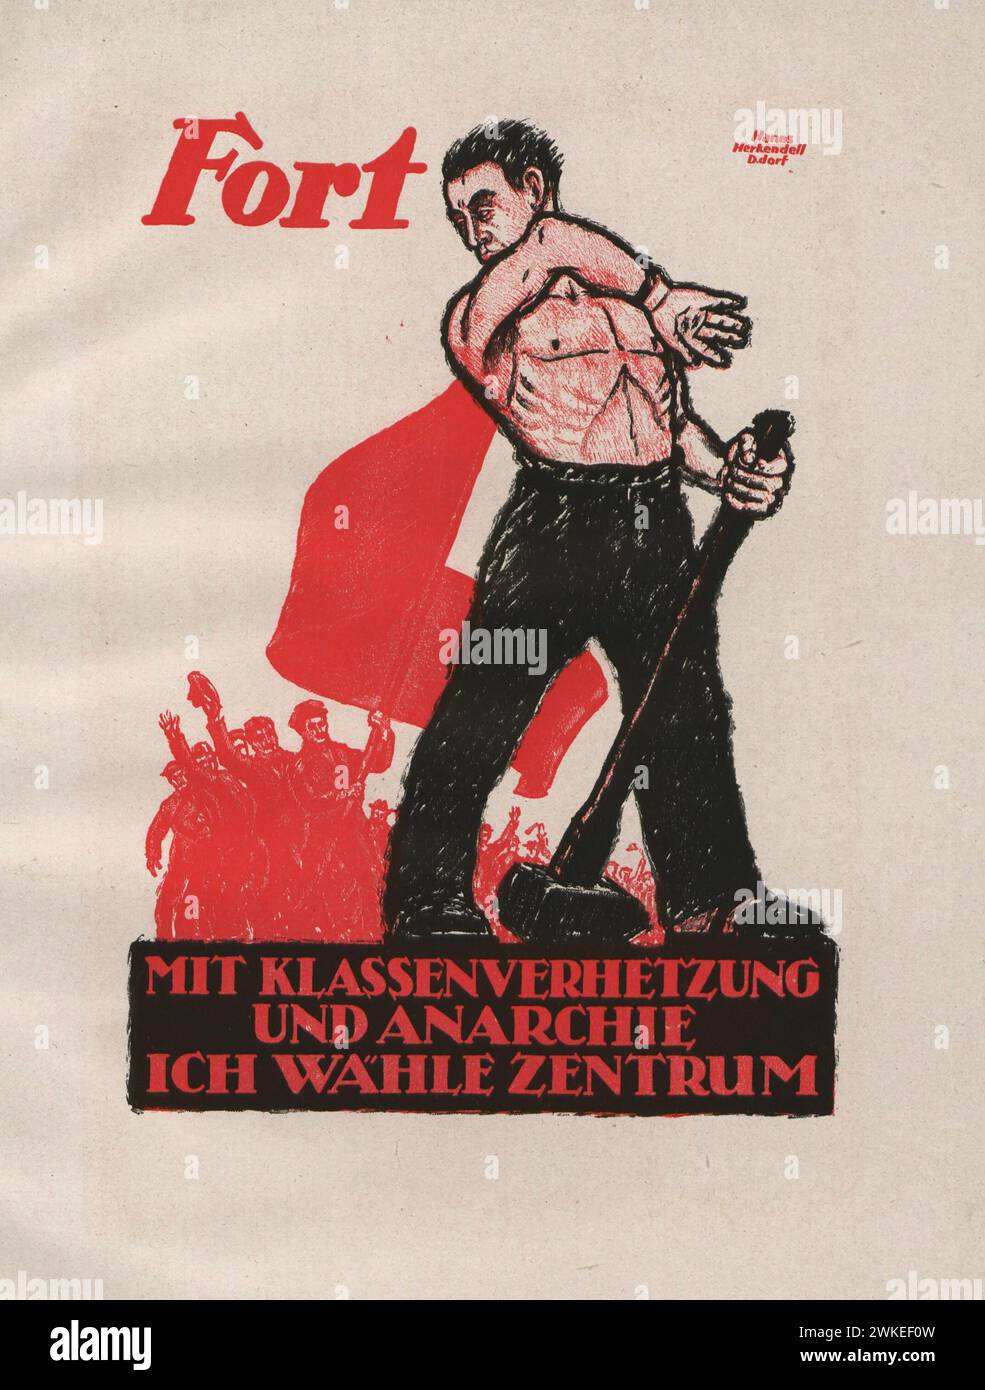 Fort mit Klassenverhetzung und Anarchie - Ich wähle Zentrum. Museum: Privatsammlung. Author: Hanns Herkendell. Stock Photo